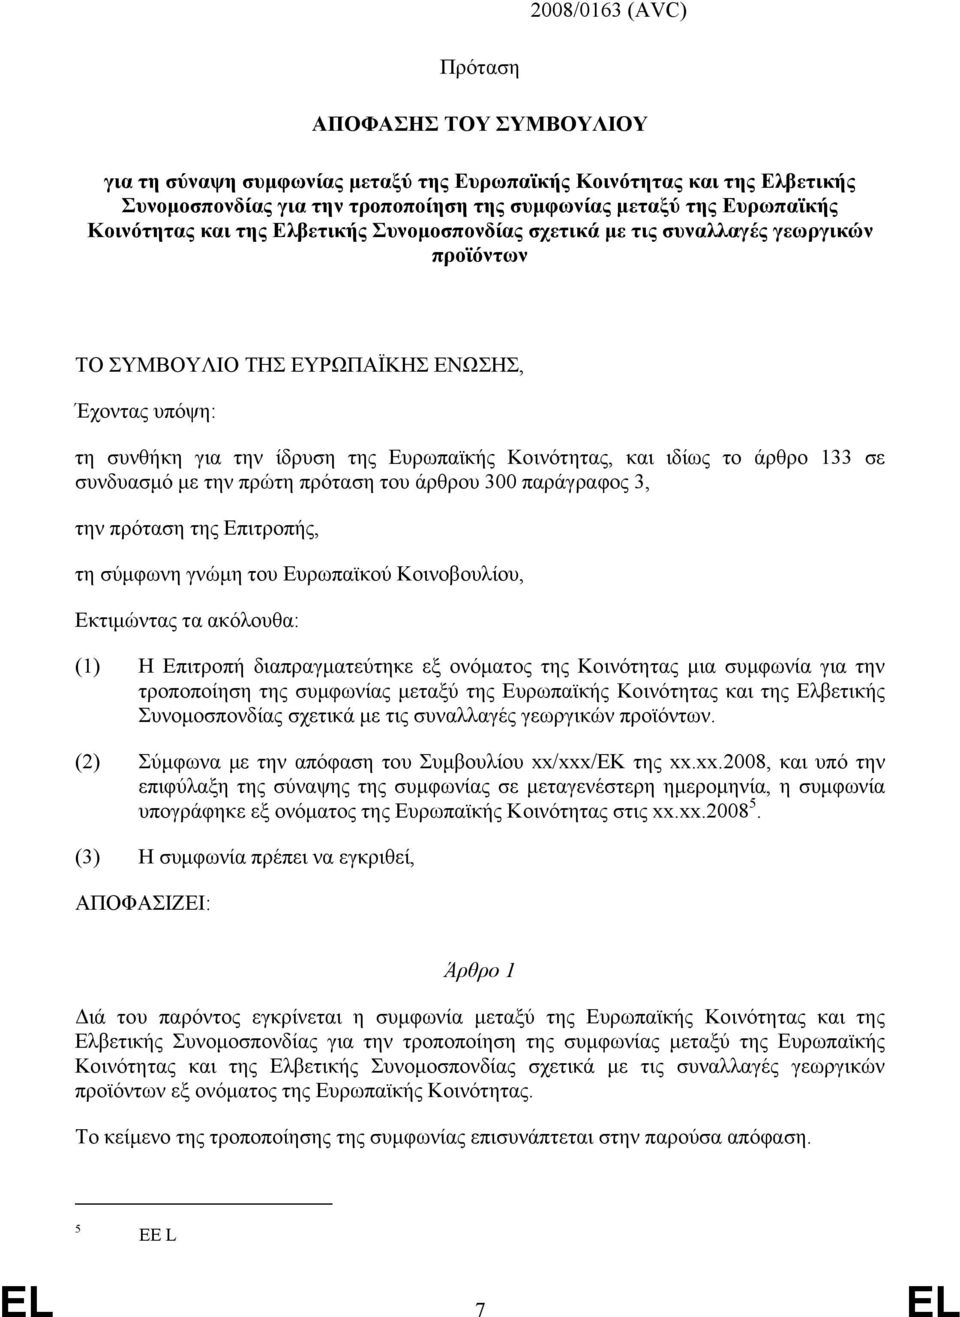 ιδίως το άρθρο 133 σε συνδυασμό με την πρώτη πρόταση του άρθρου 300 παράγραφος 3, την πρόταση της Επιτροπής, τη σύμφωνη γνώμη του Ευρωπαϊκού Κοινοβουλίου, Εκτιμώντας τα ακόλουθα: (1) Η Επιτροπή